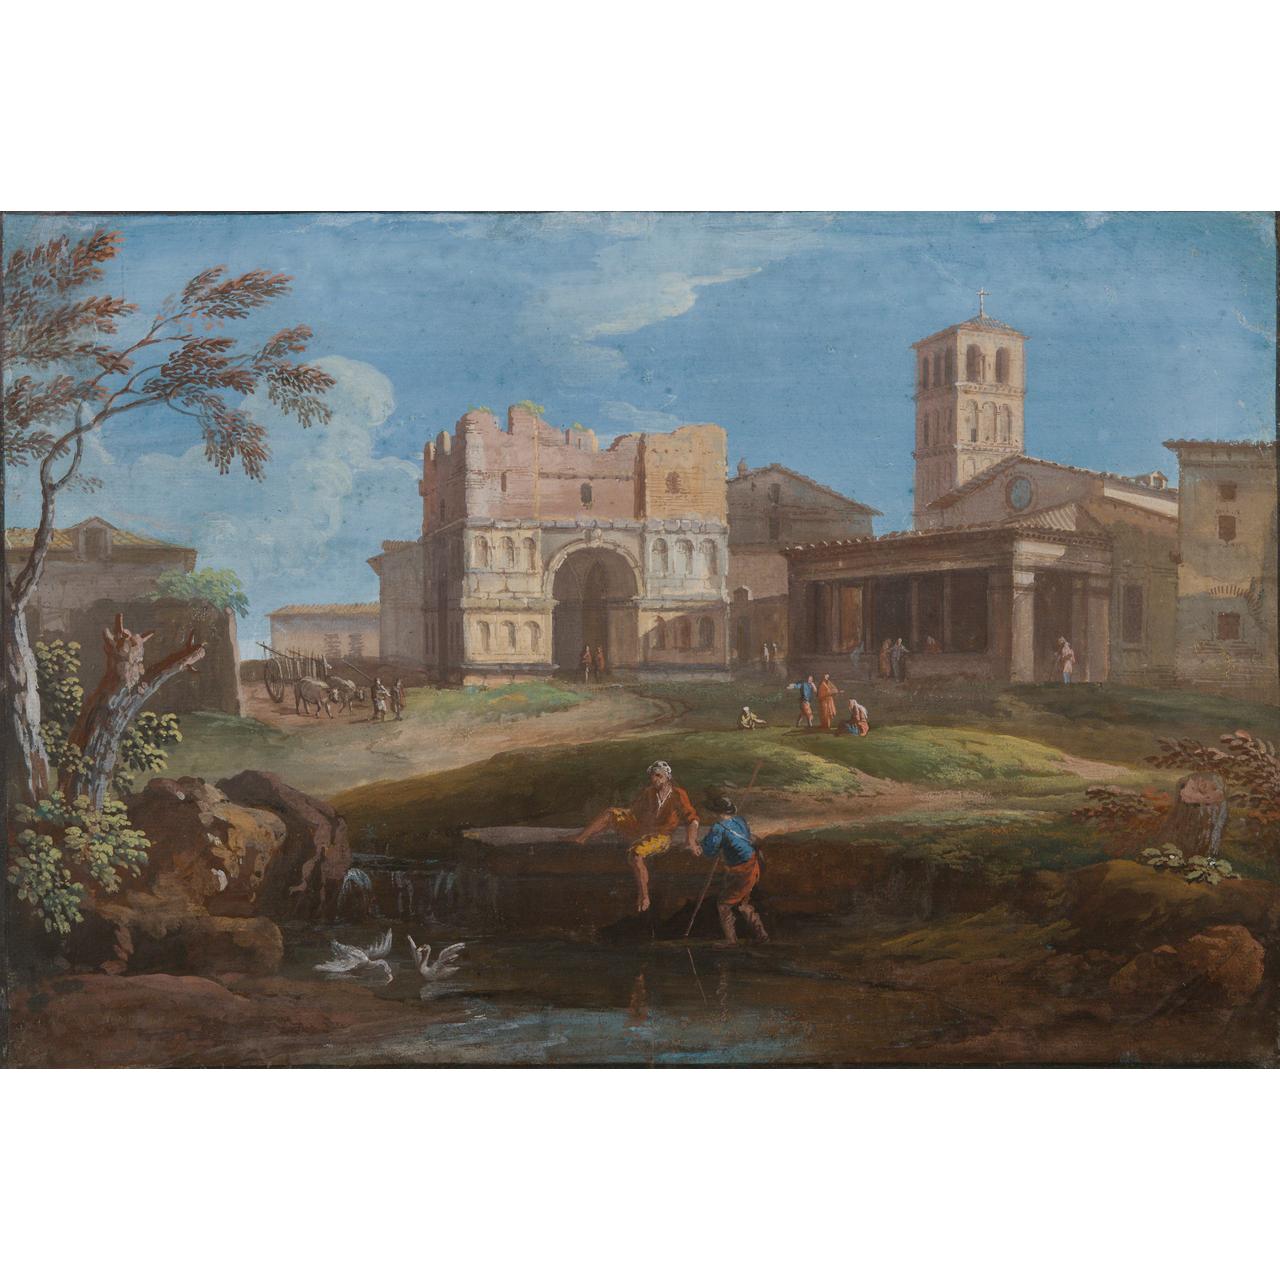 Dipinto: Arco di Giano Quadrifronte e la chiesa di San Giorgio al Velabro